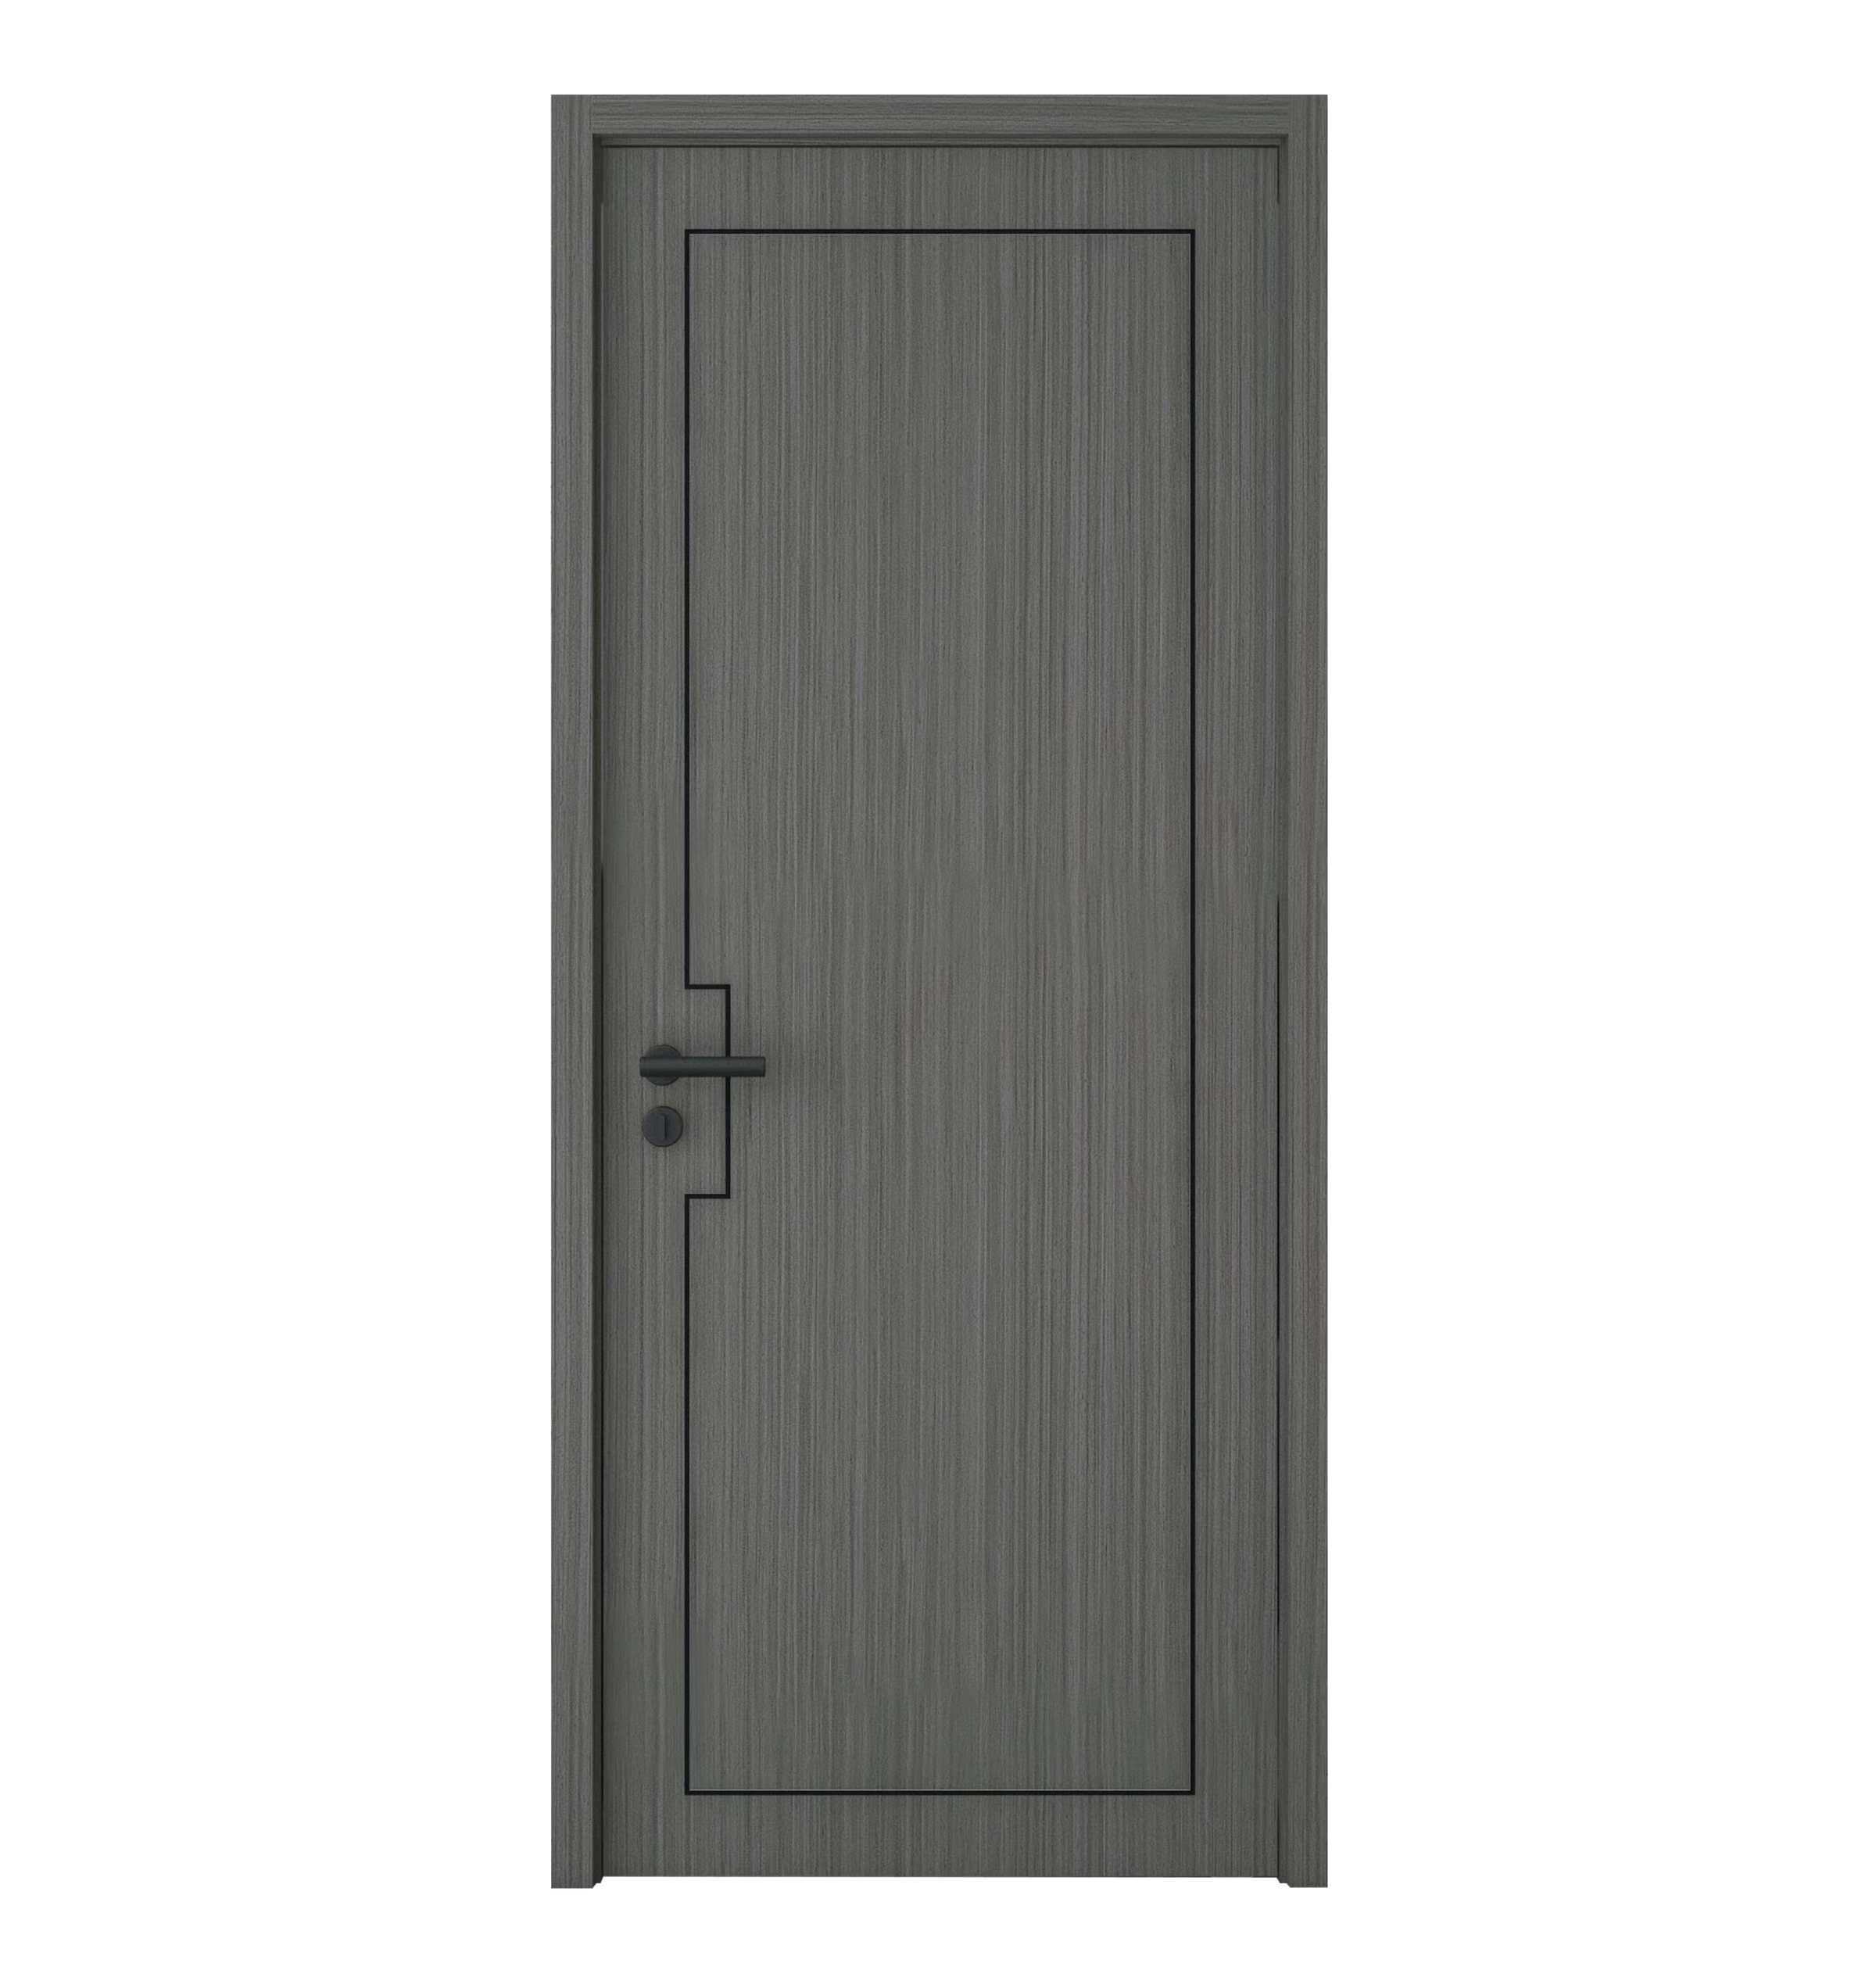 Bedroom Wooden Door Design Waterproof Polish Panel Modern Interior Doors for Houses Interior Wooden Door